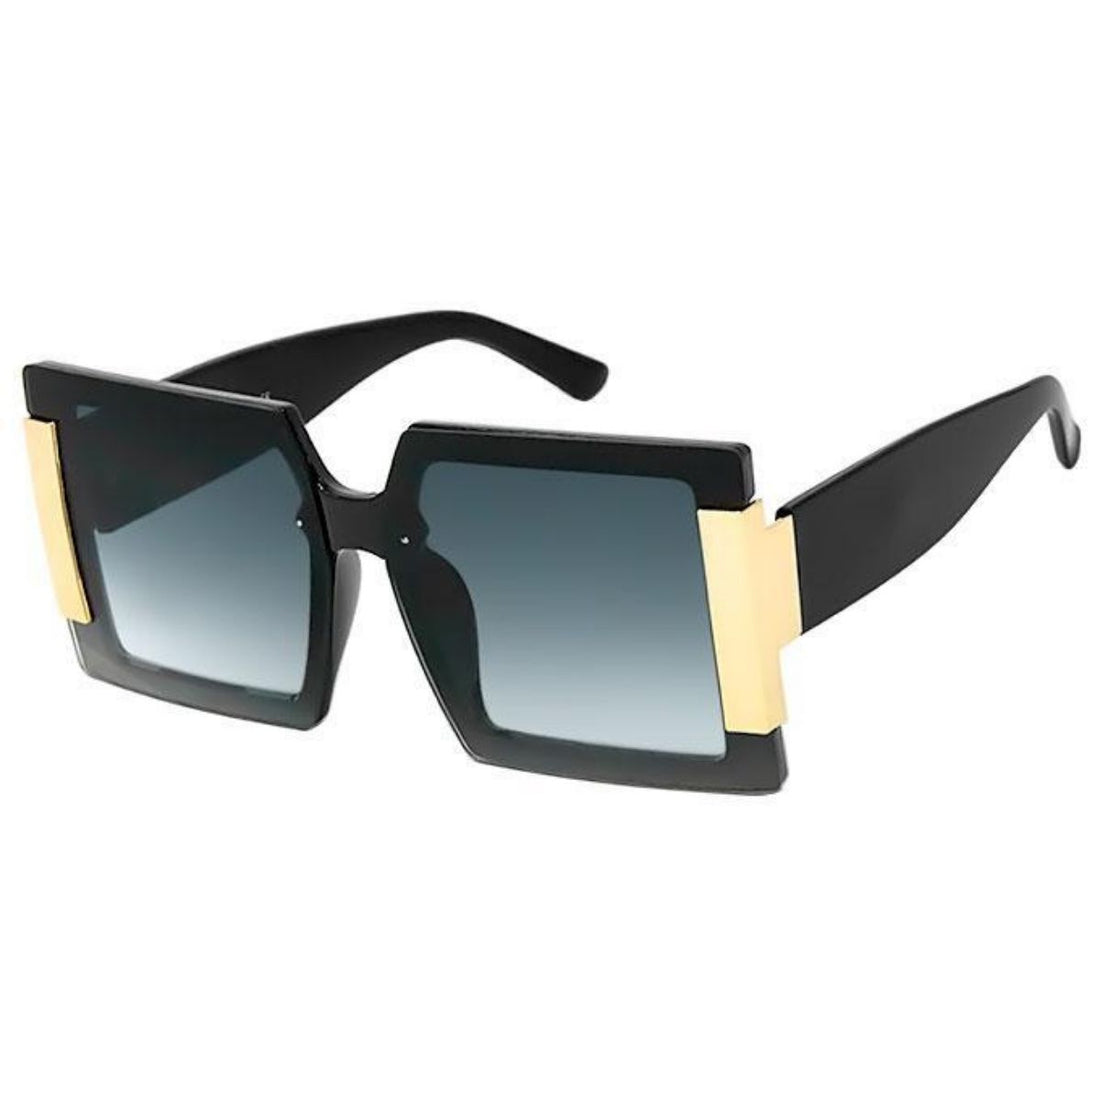 Black Shiny Gold Temple Sunglasses